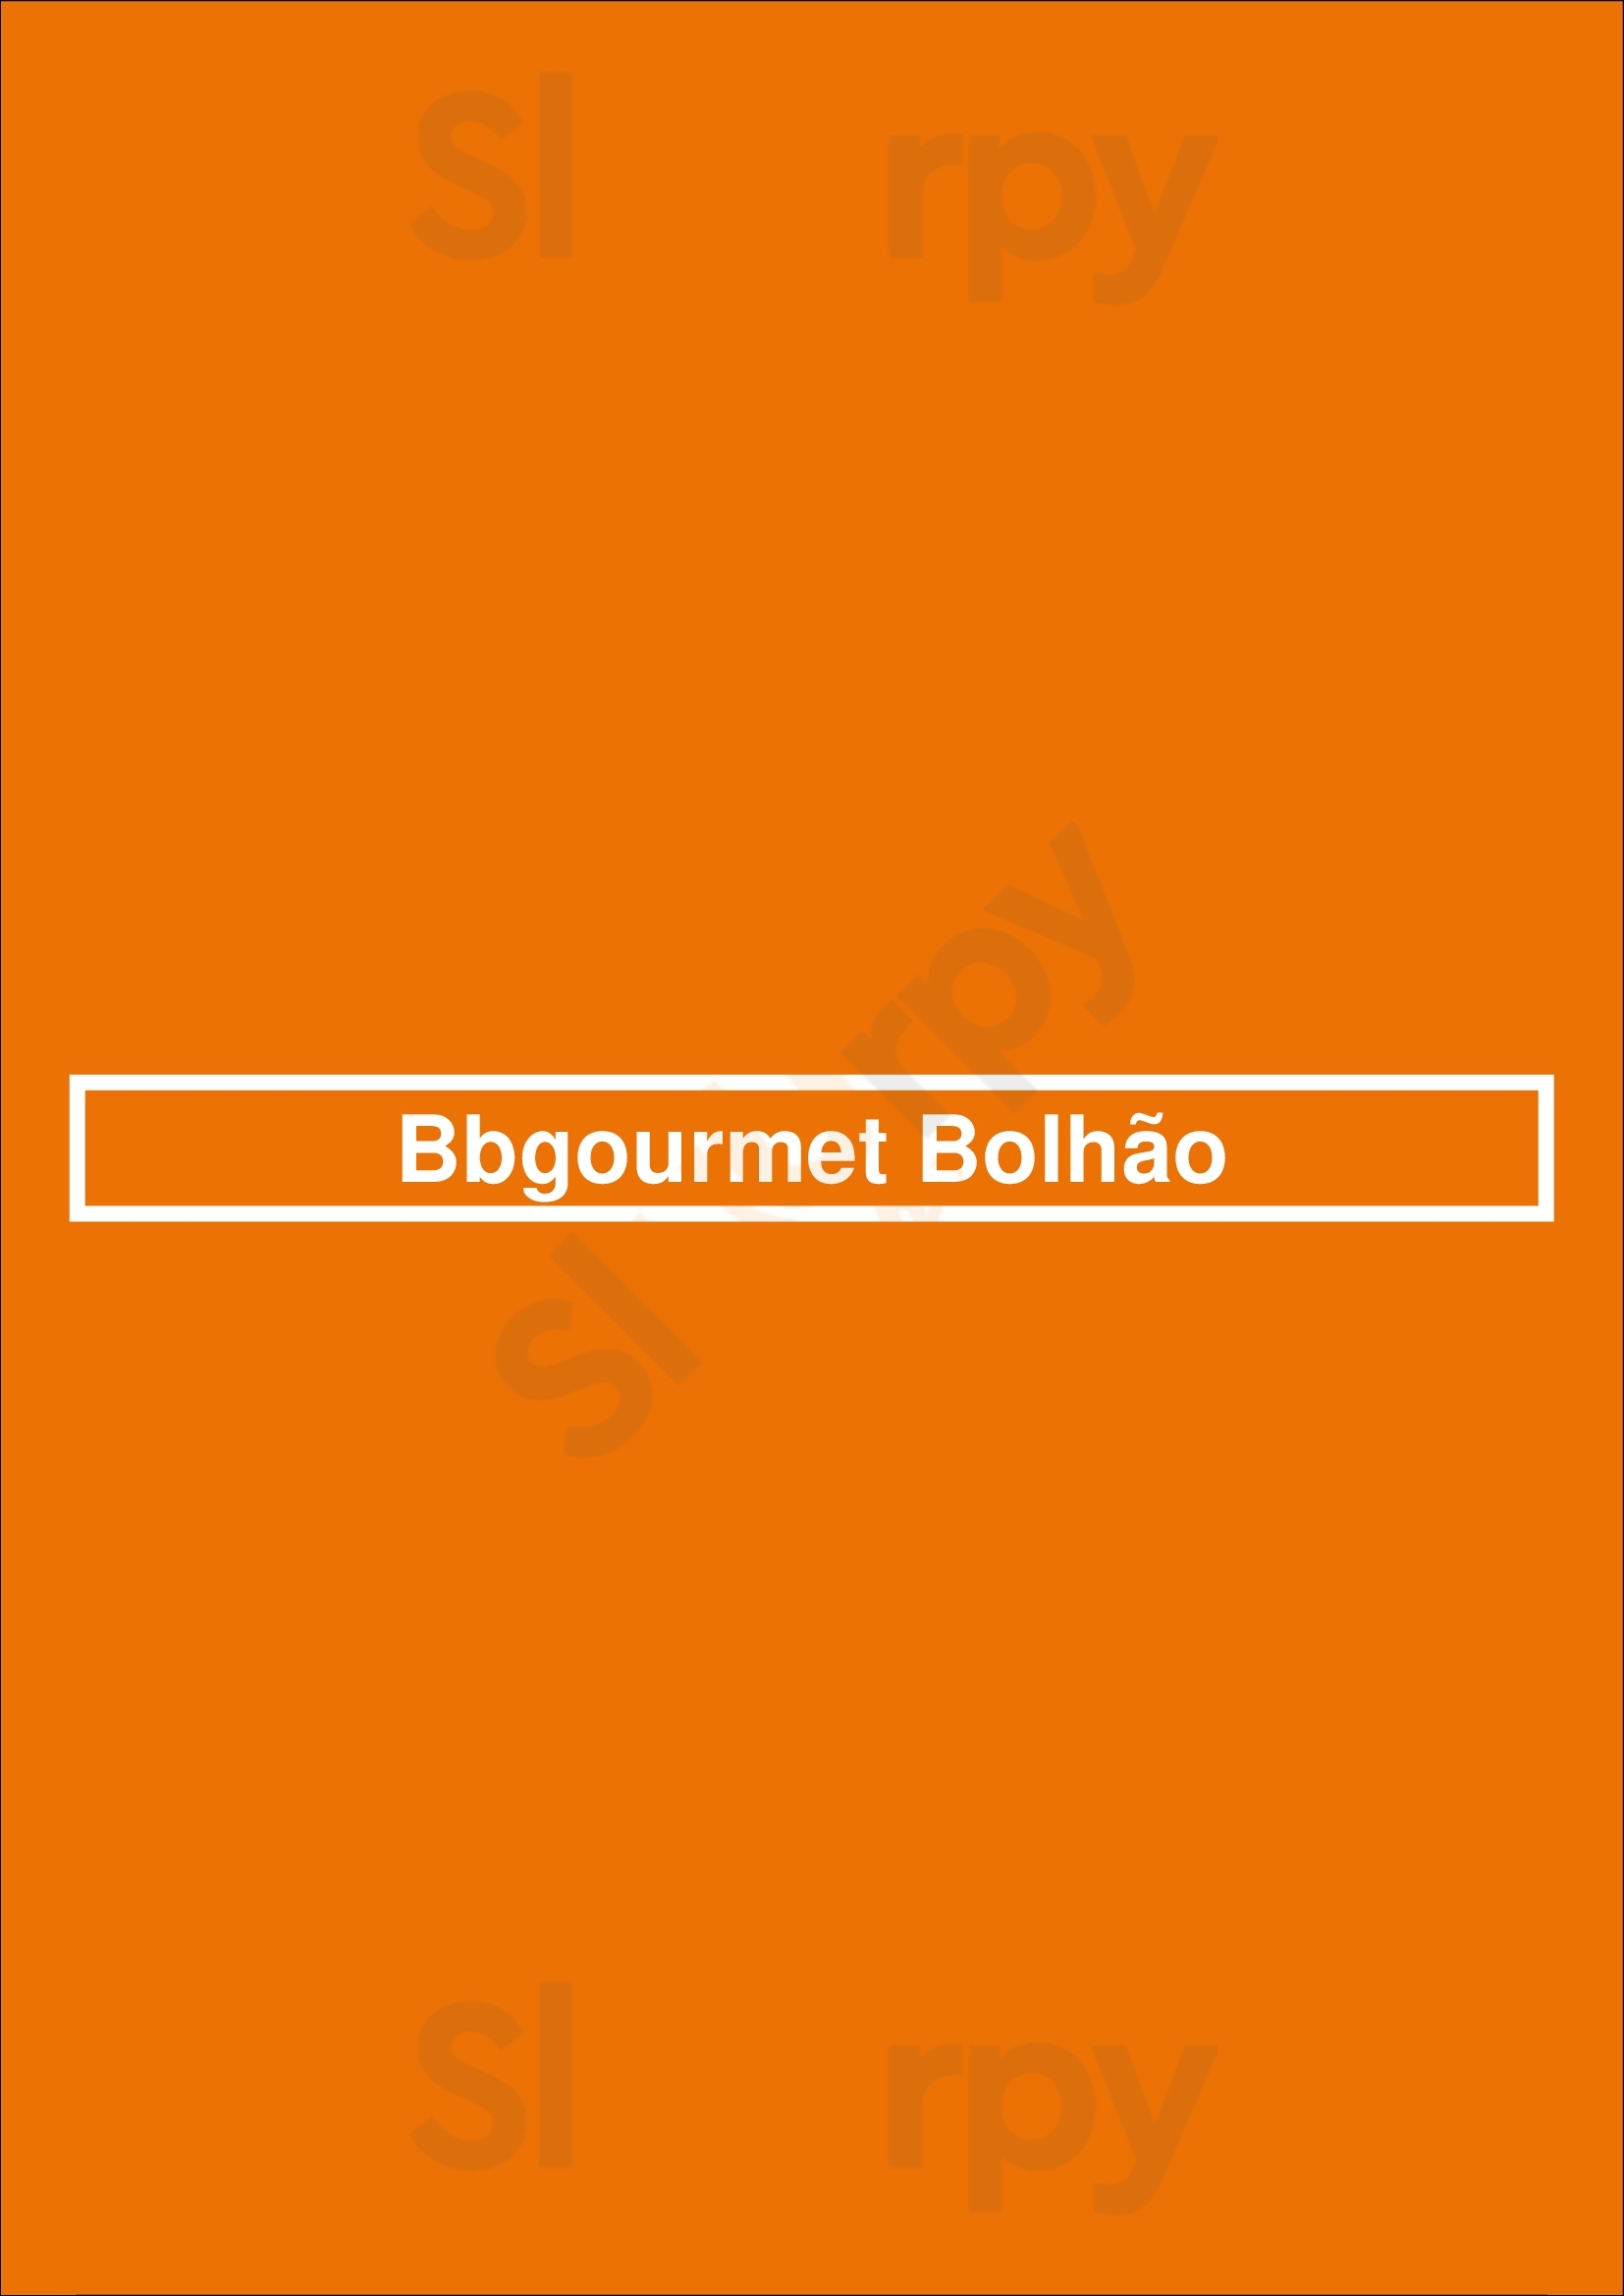 Bbgourmet Bolhão Porto Menu - 1